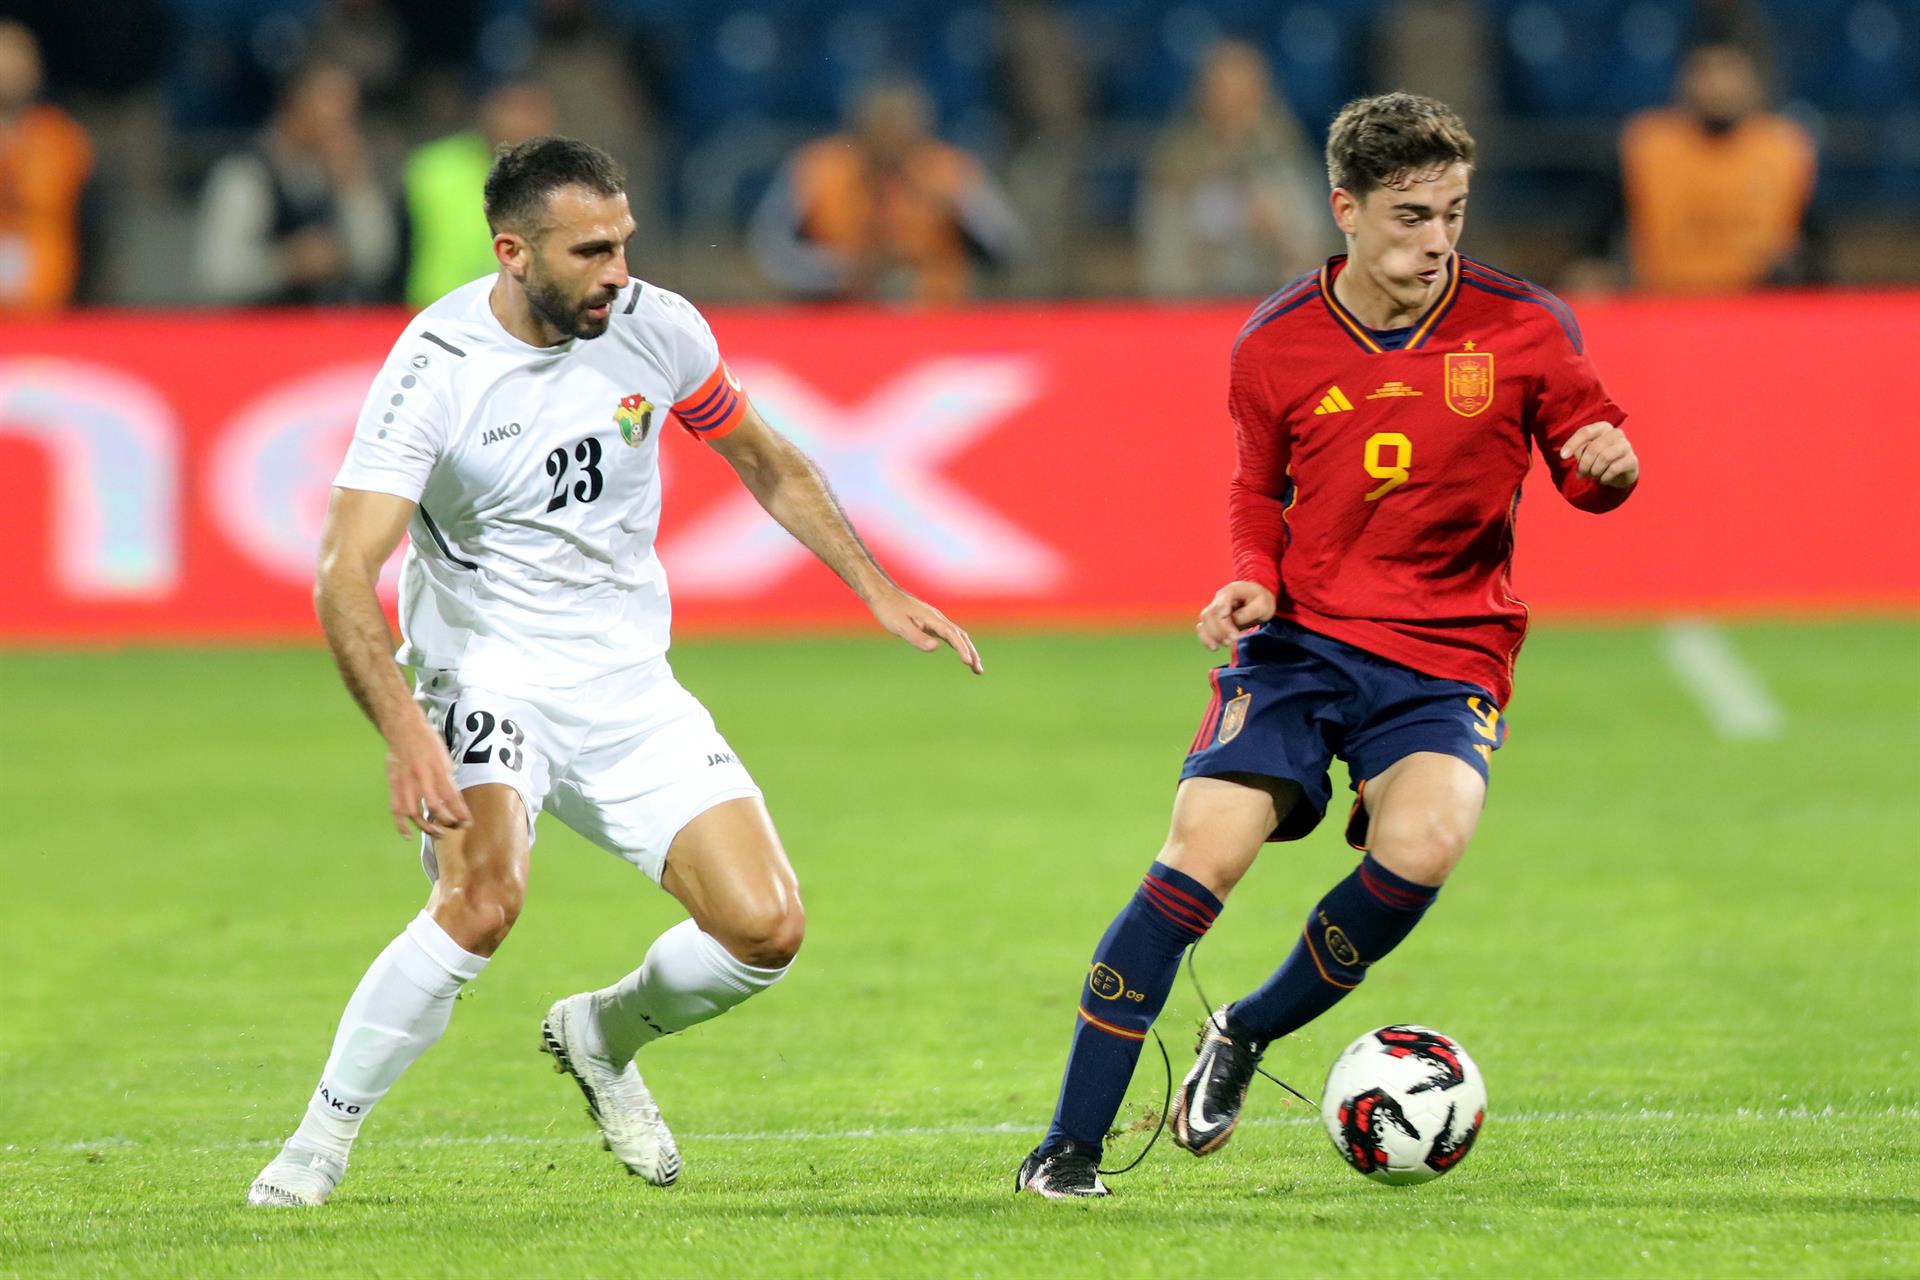 Ehsan Haddad de Jordania (i) en acción contra Gavi de España (d) durante el partido amistoso de fútbol internacional entre Jordania y España.